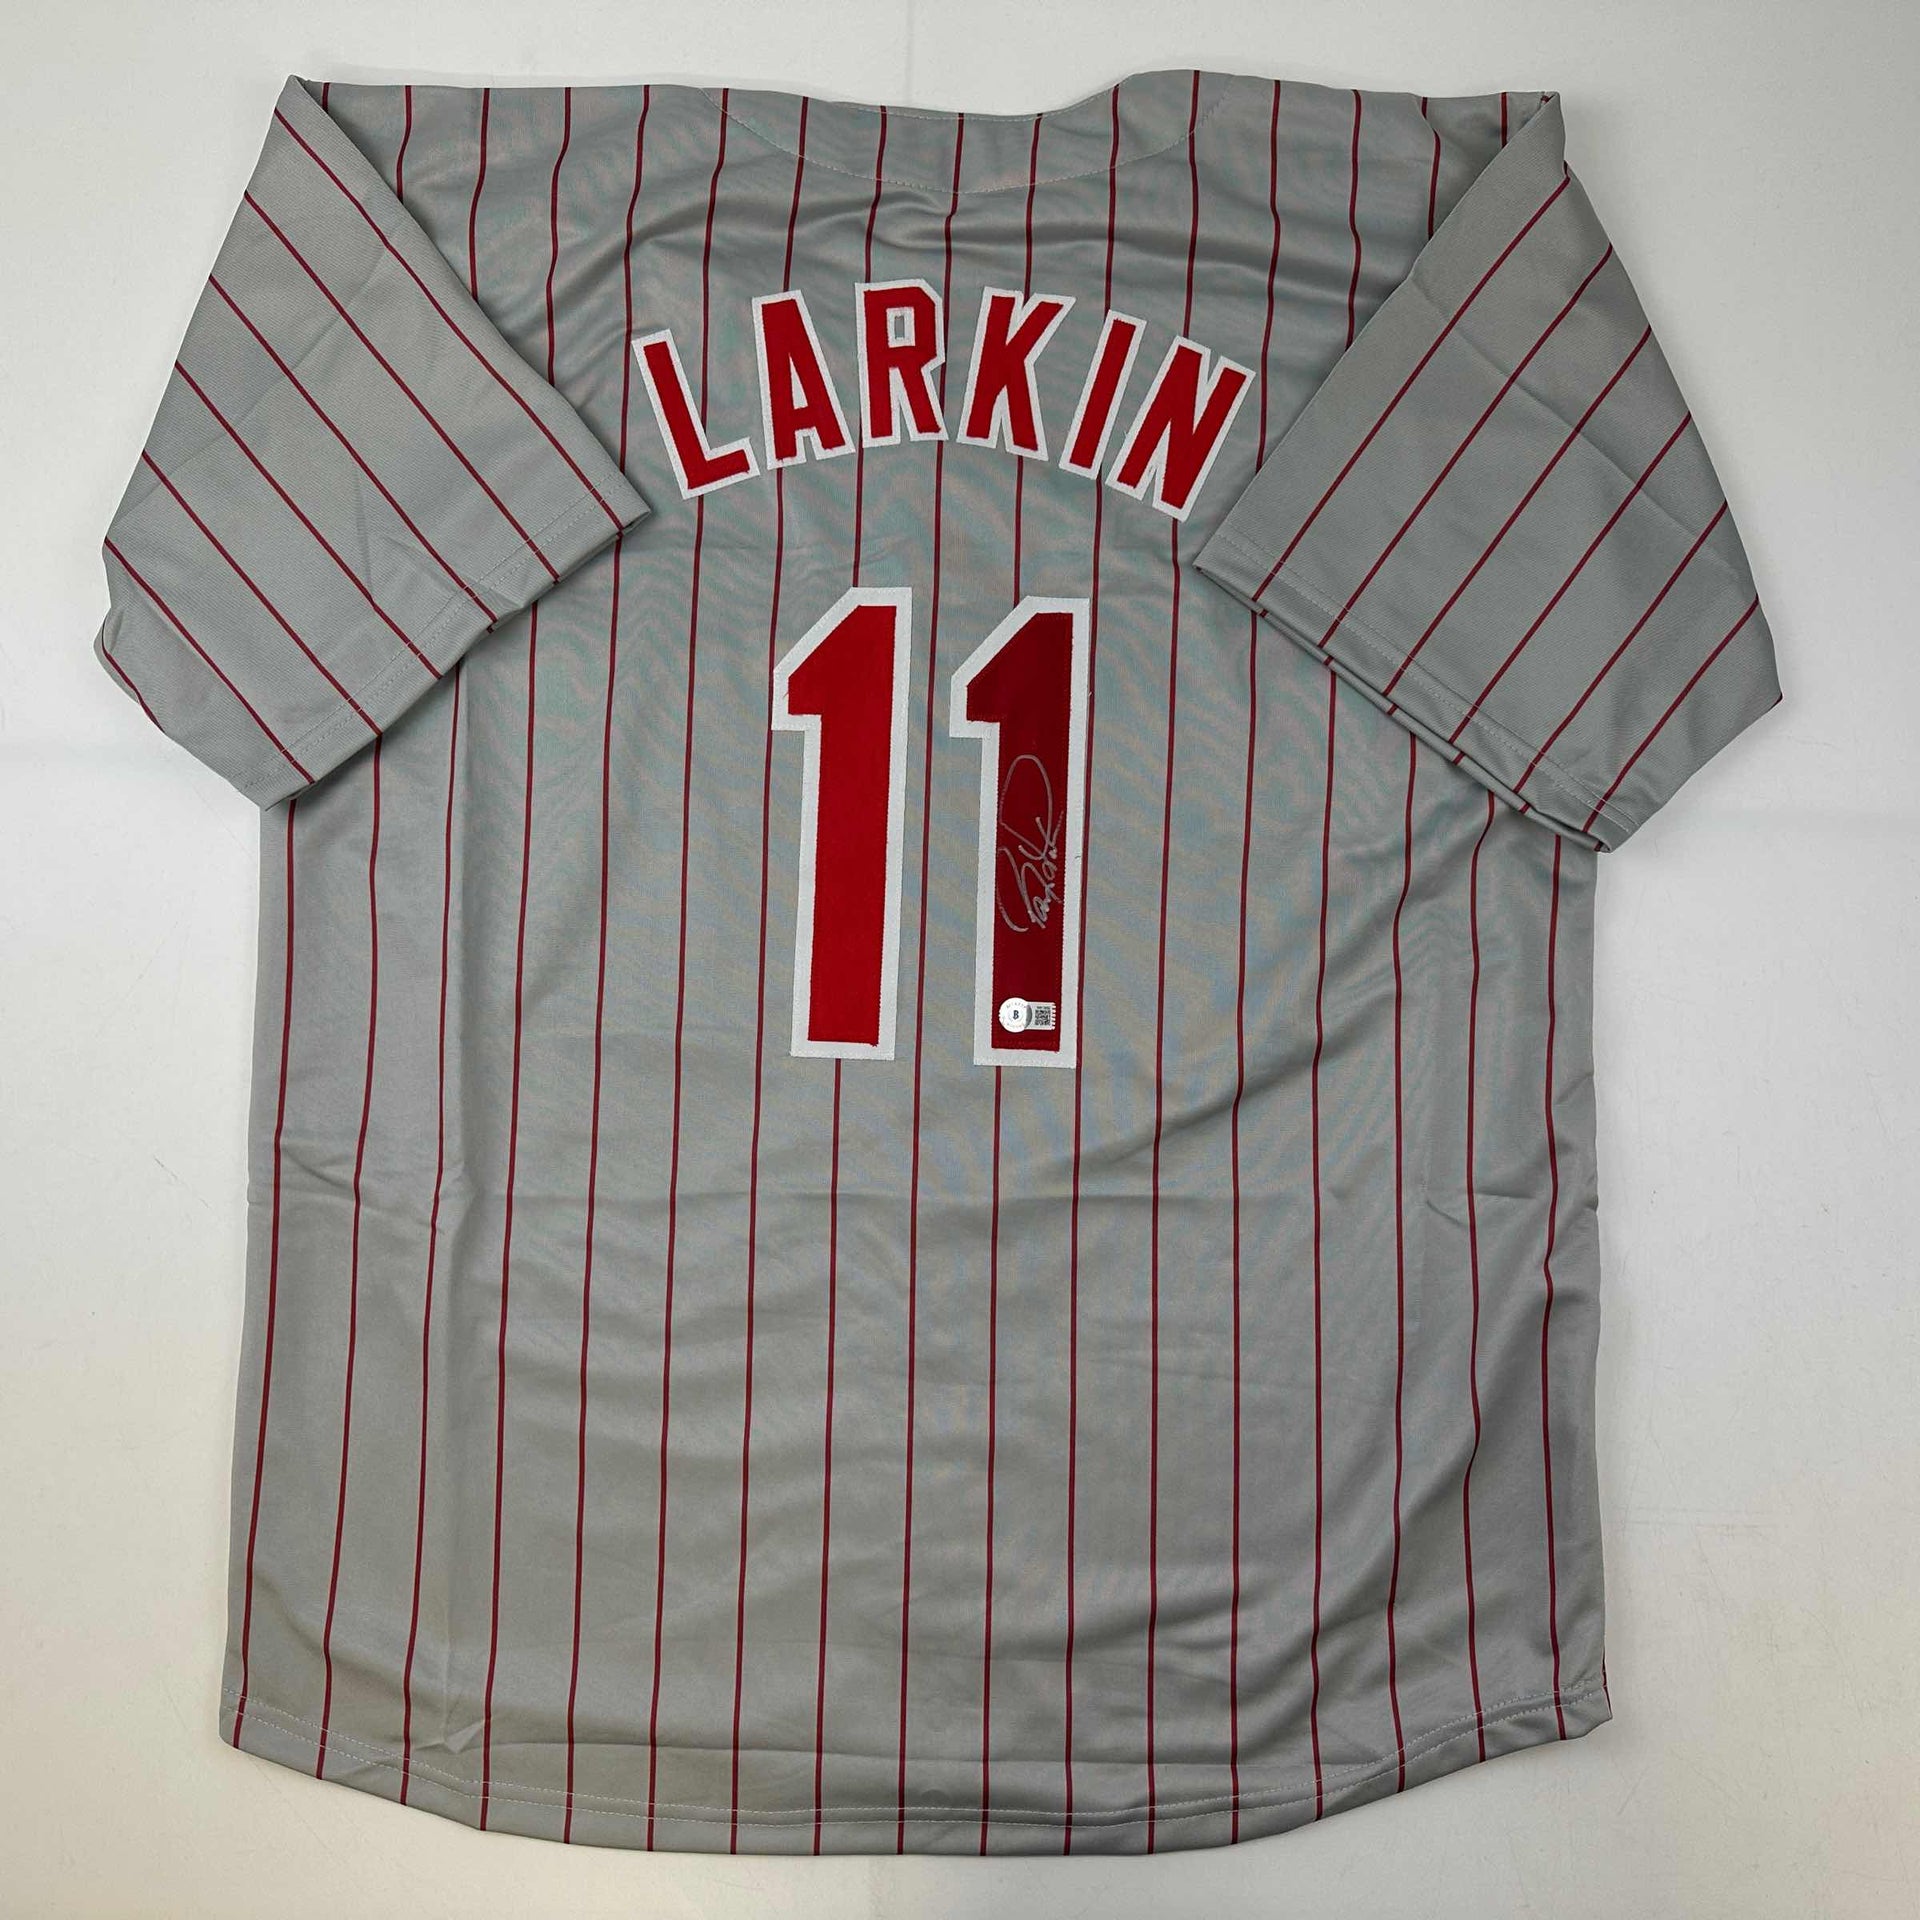 Autographed/Signed Barry Larkin Cincinnati Grey Pinstripe Baseball